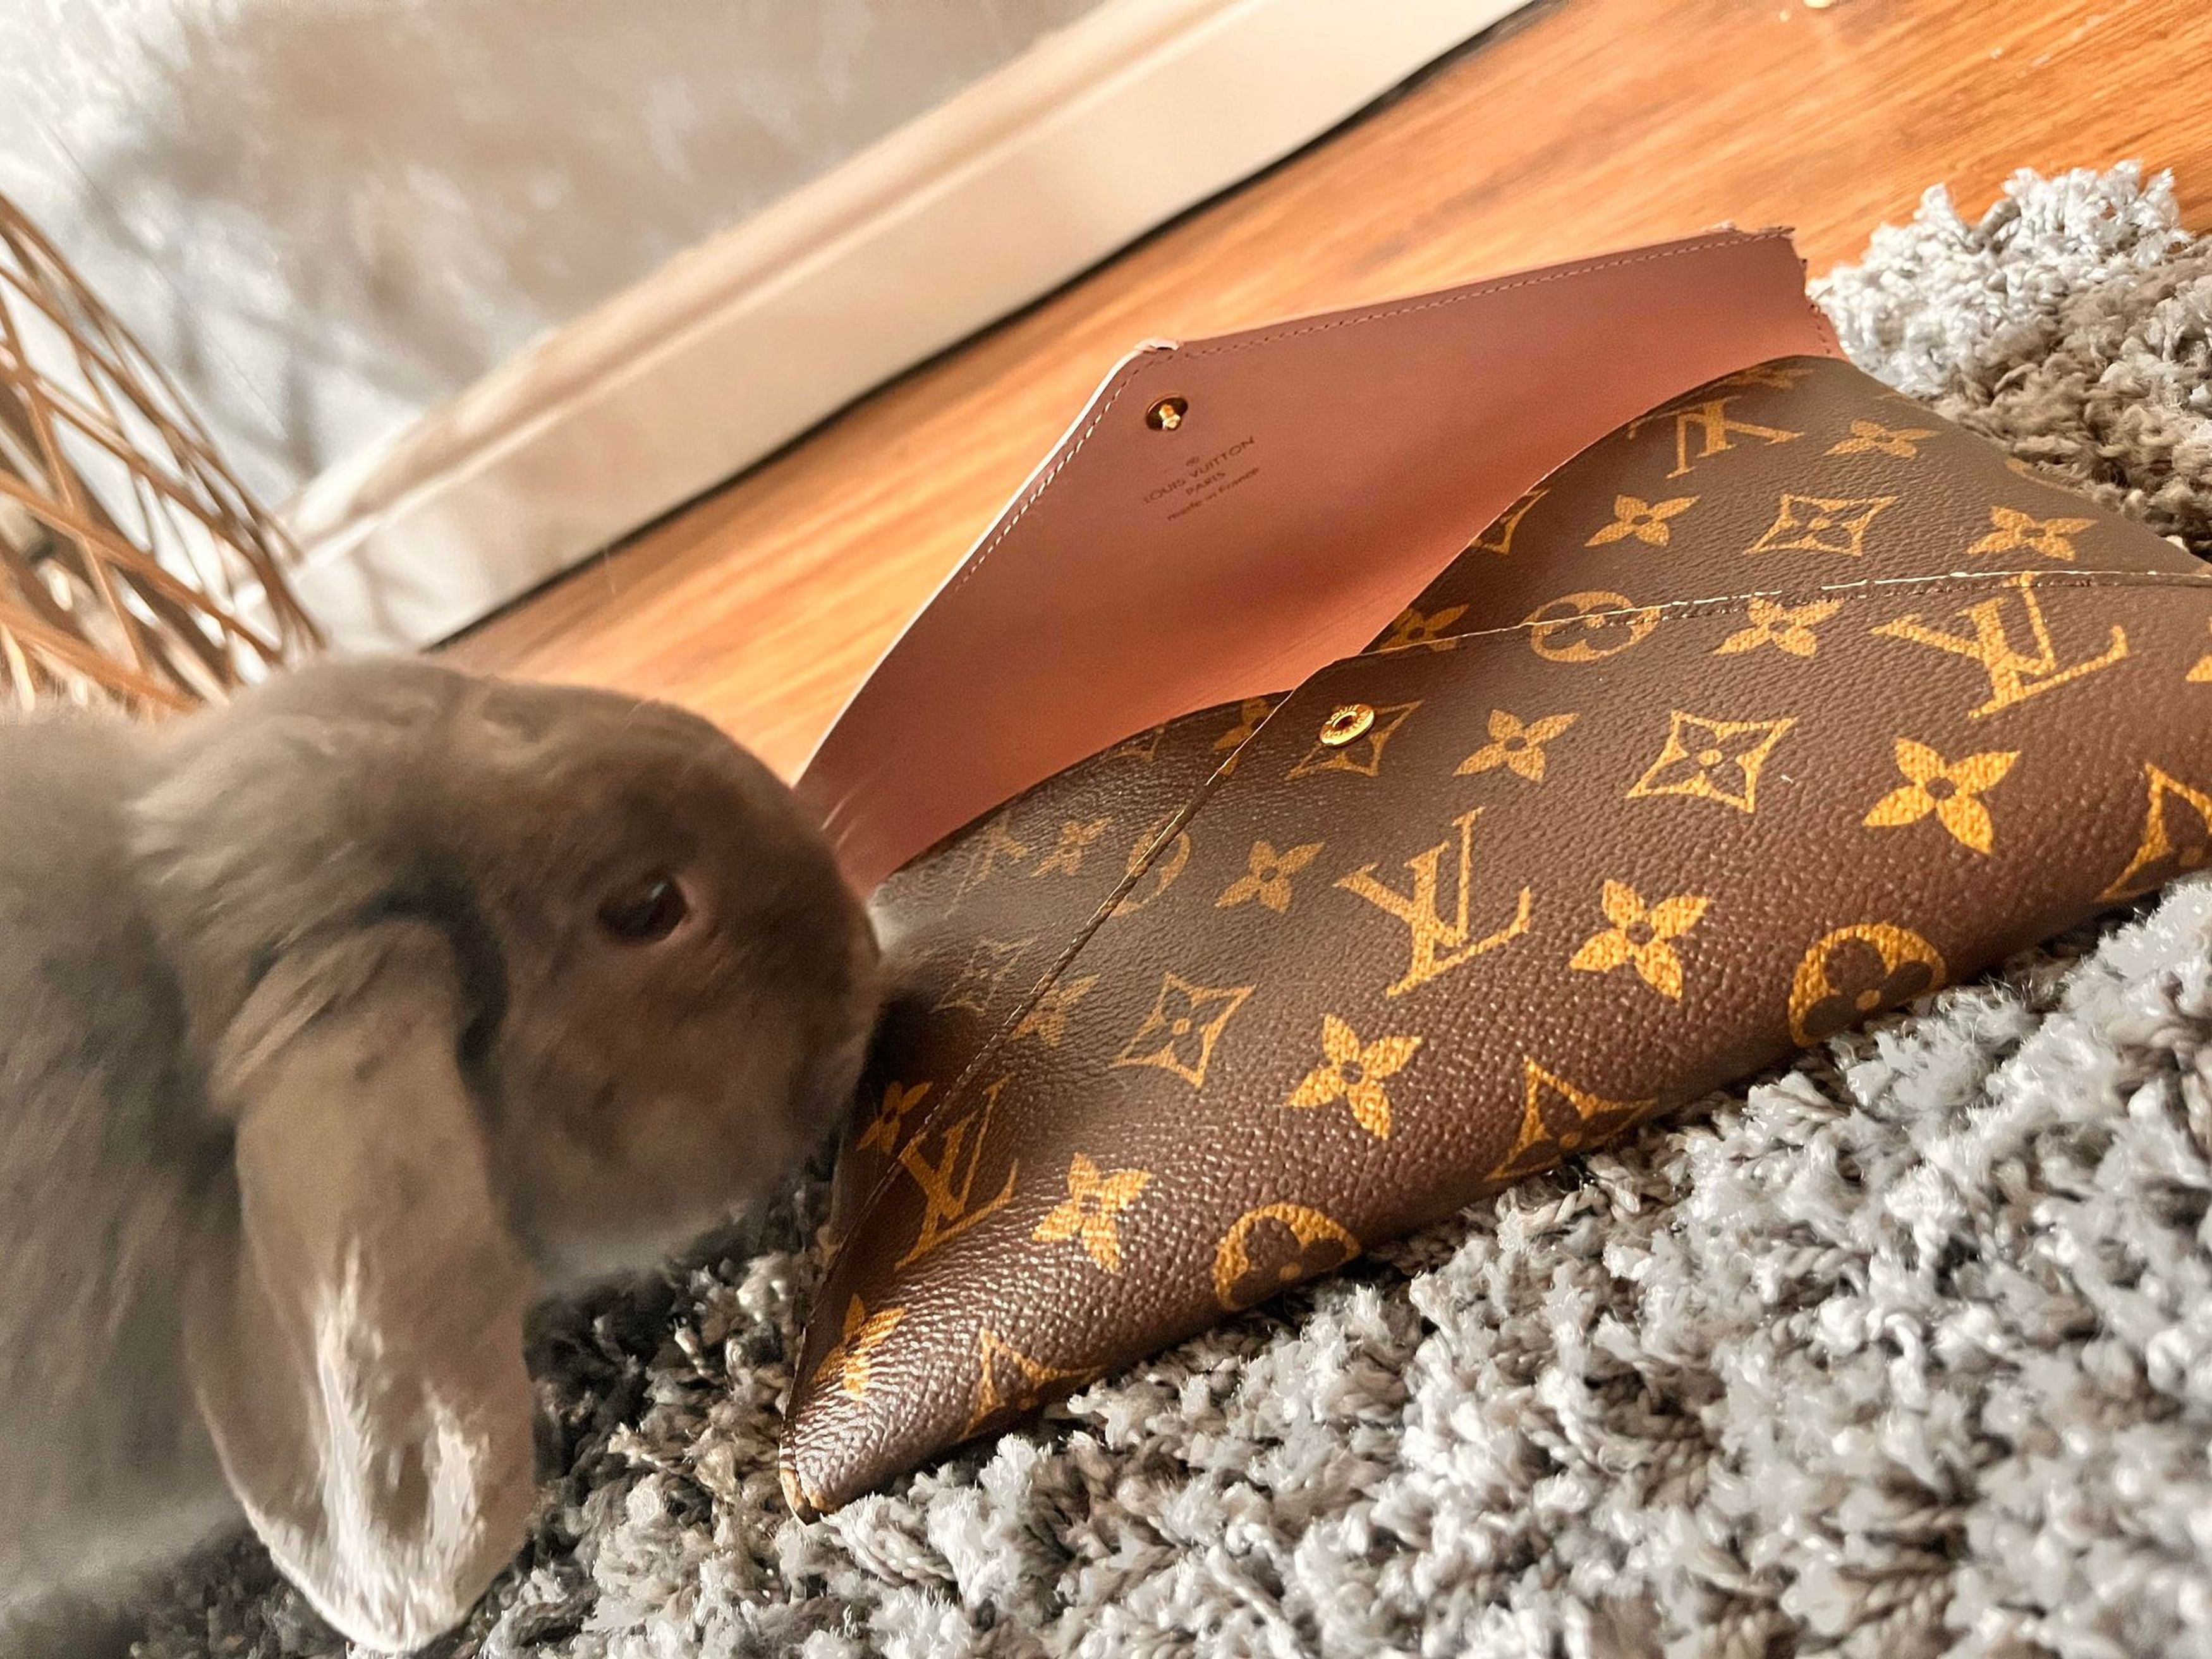 UK Woman's Pet Rabbit Chews Off Louis Vuitton Bags, Designer Shoes